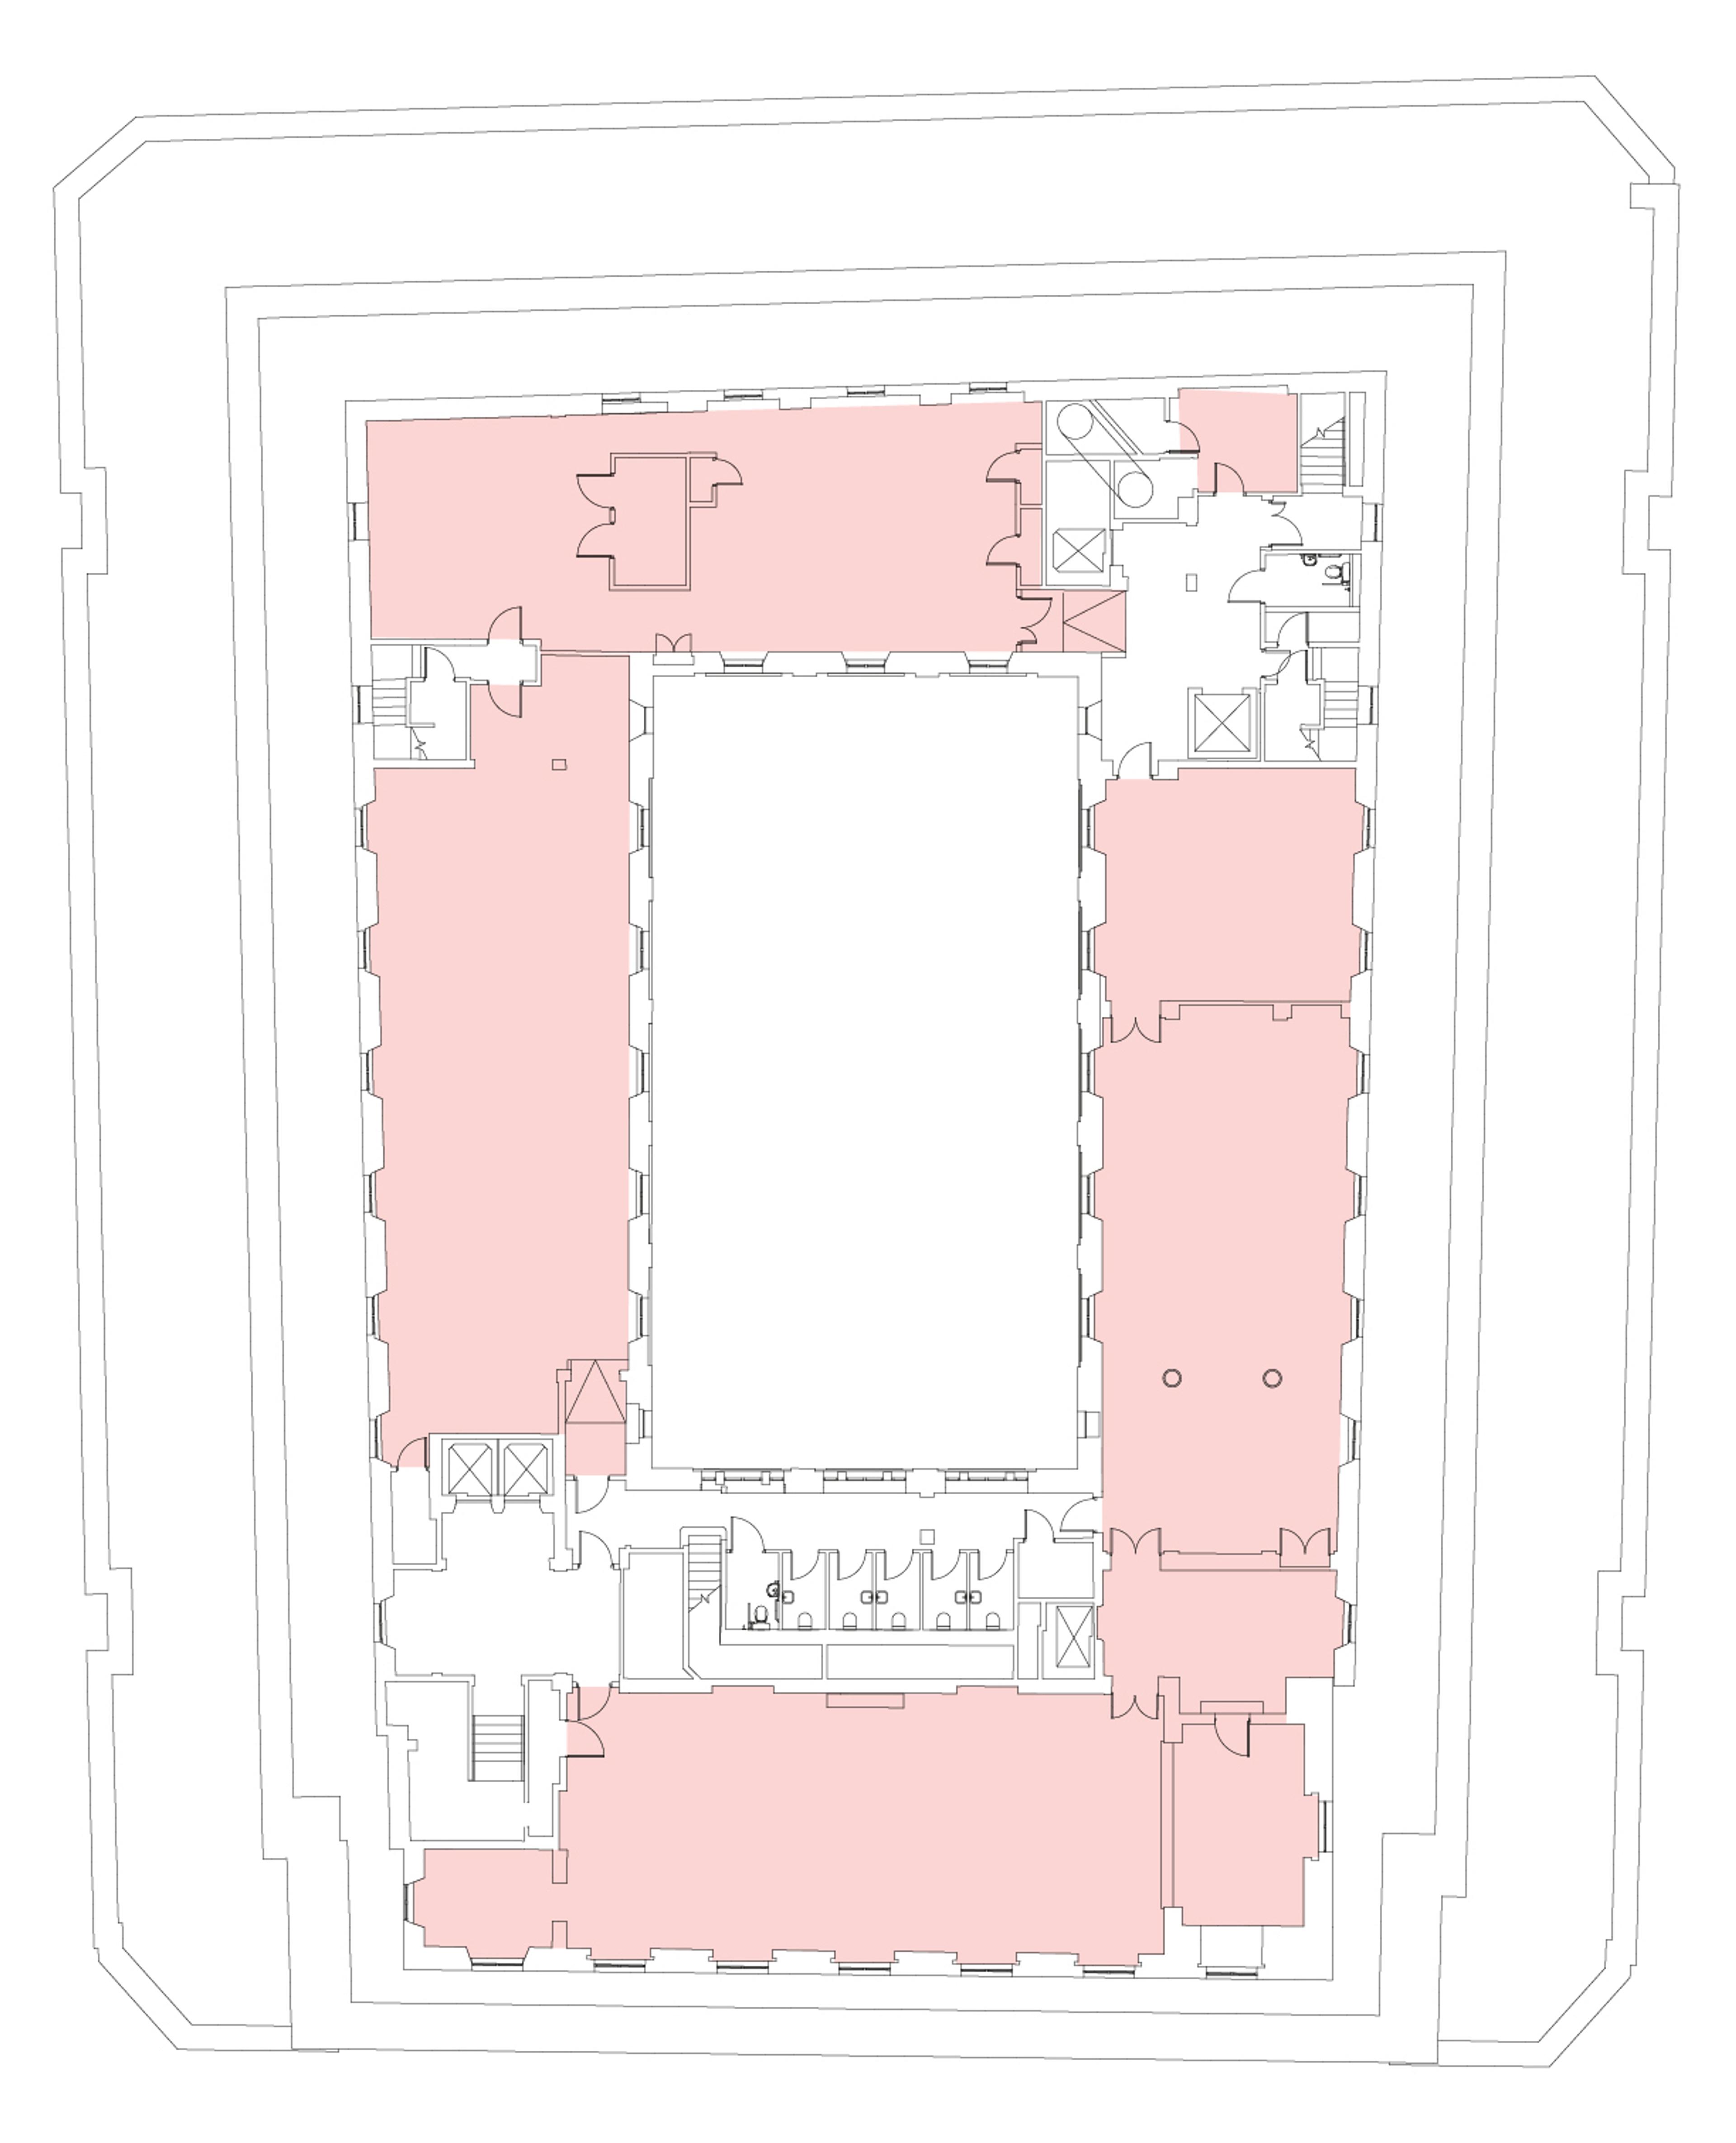 Ground floor map